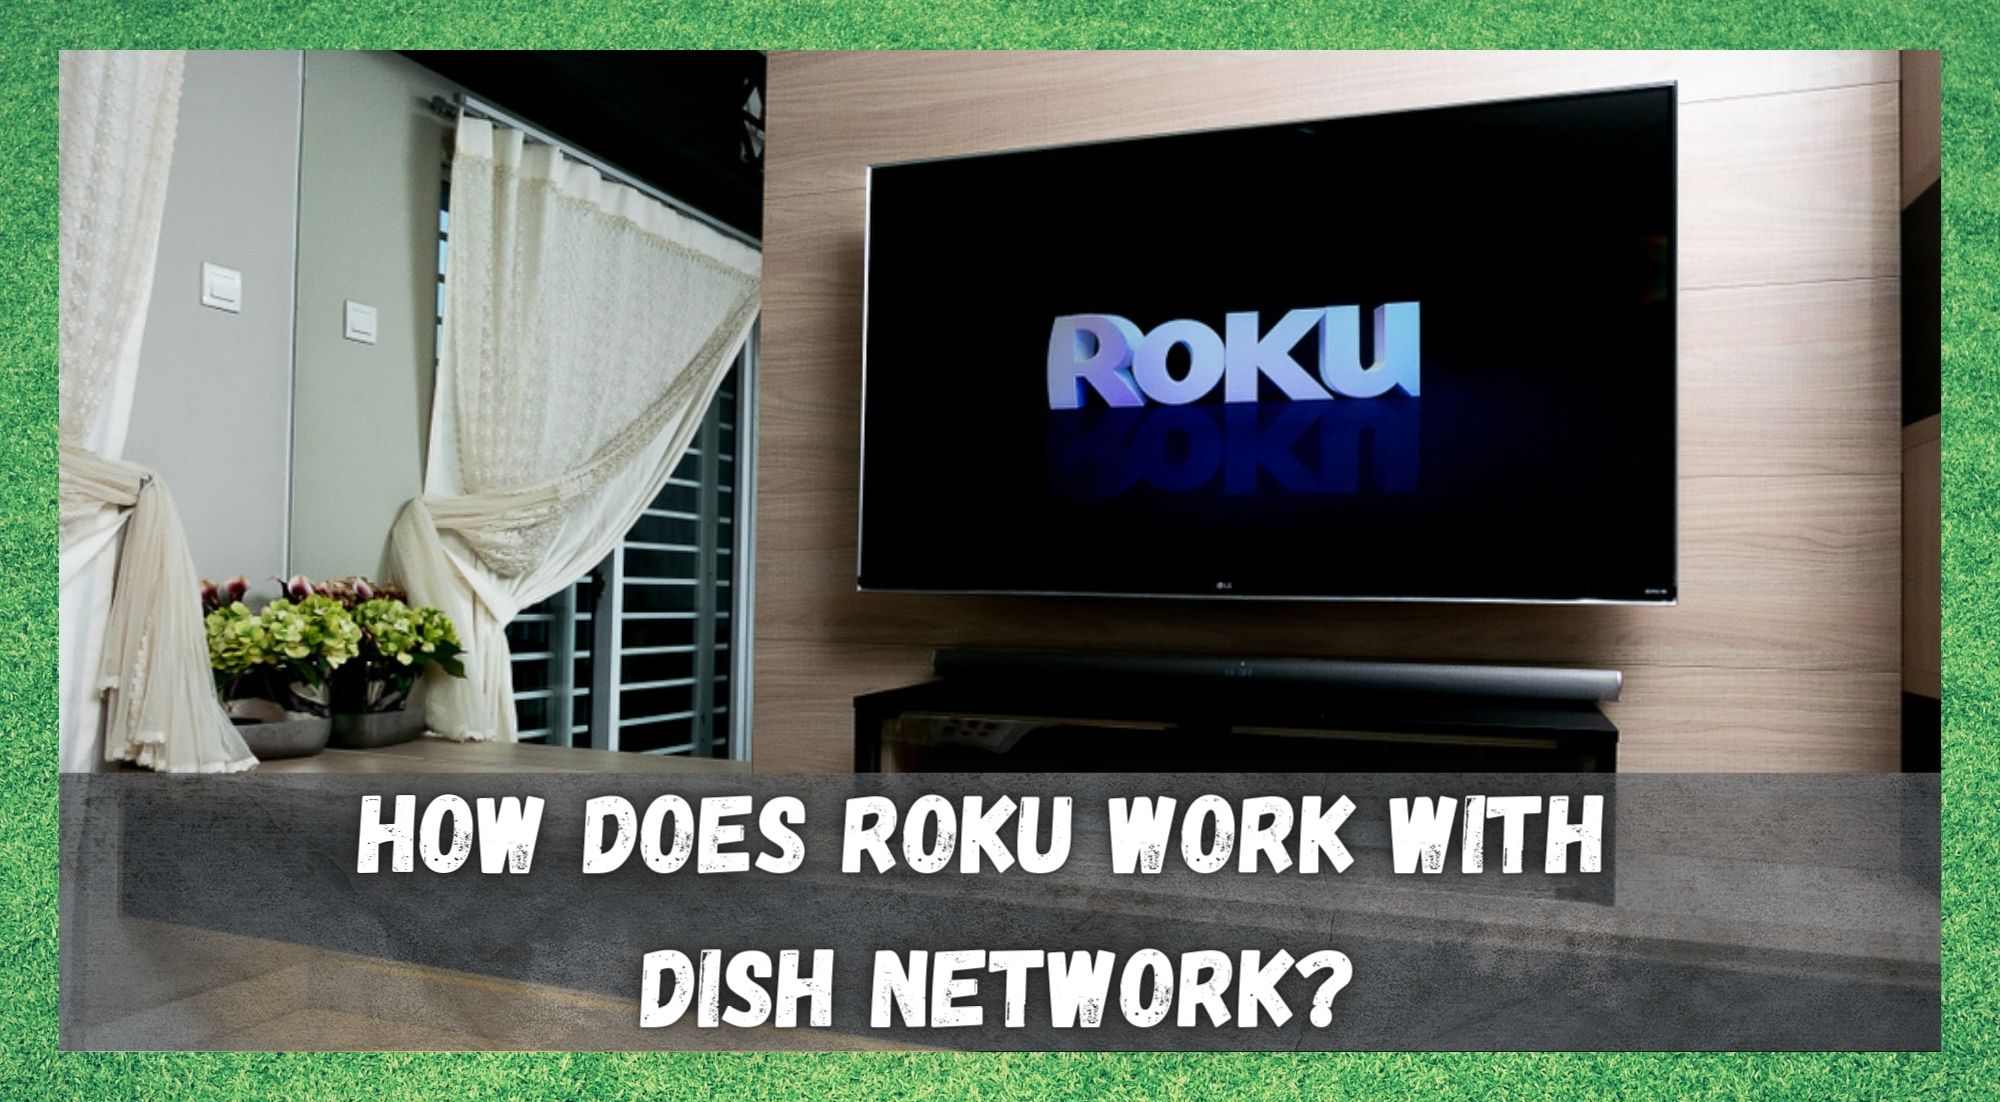 Roku ڈش نیٹ ورک کے ساتھ کیسے کام کرتا ہے؟